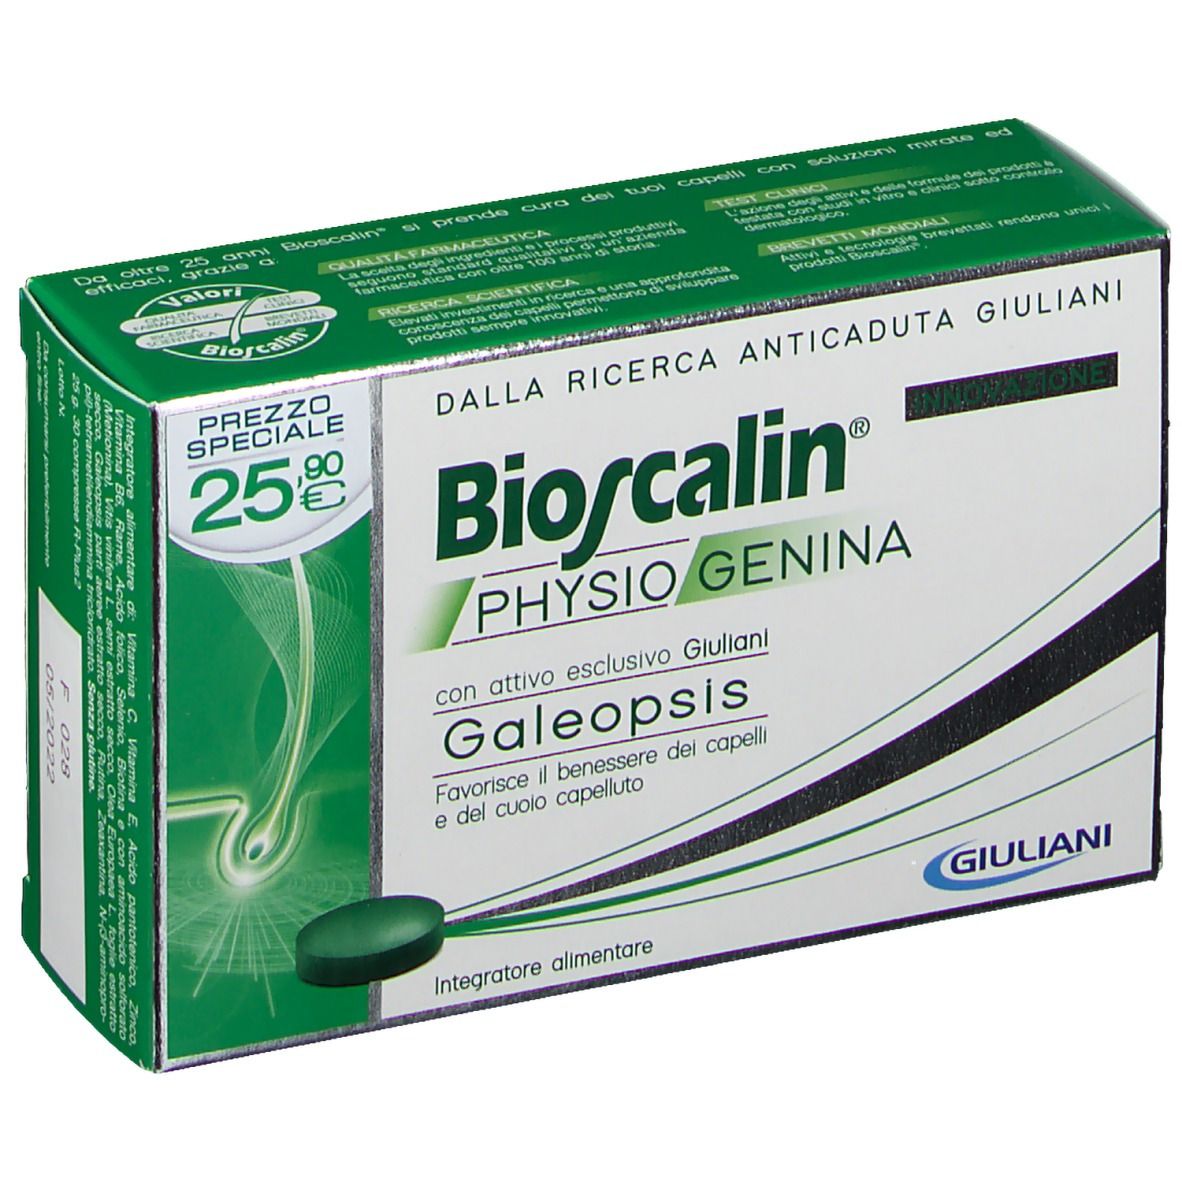 Bioscalin® Physiogenina Compresse Uomo e Donna - shop ...